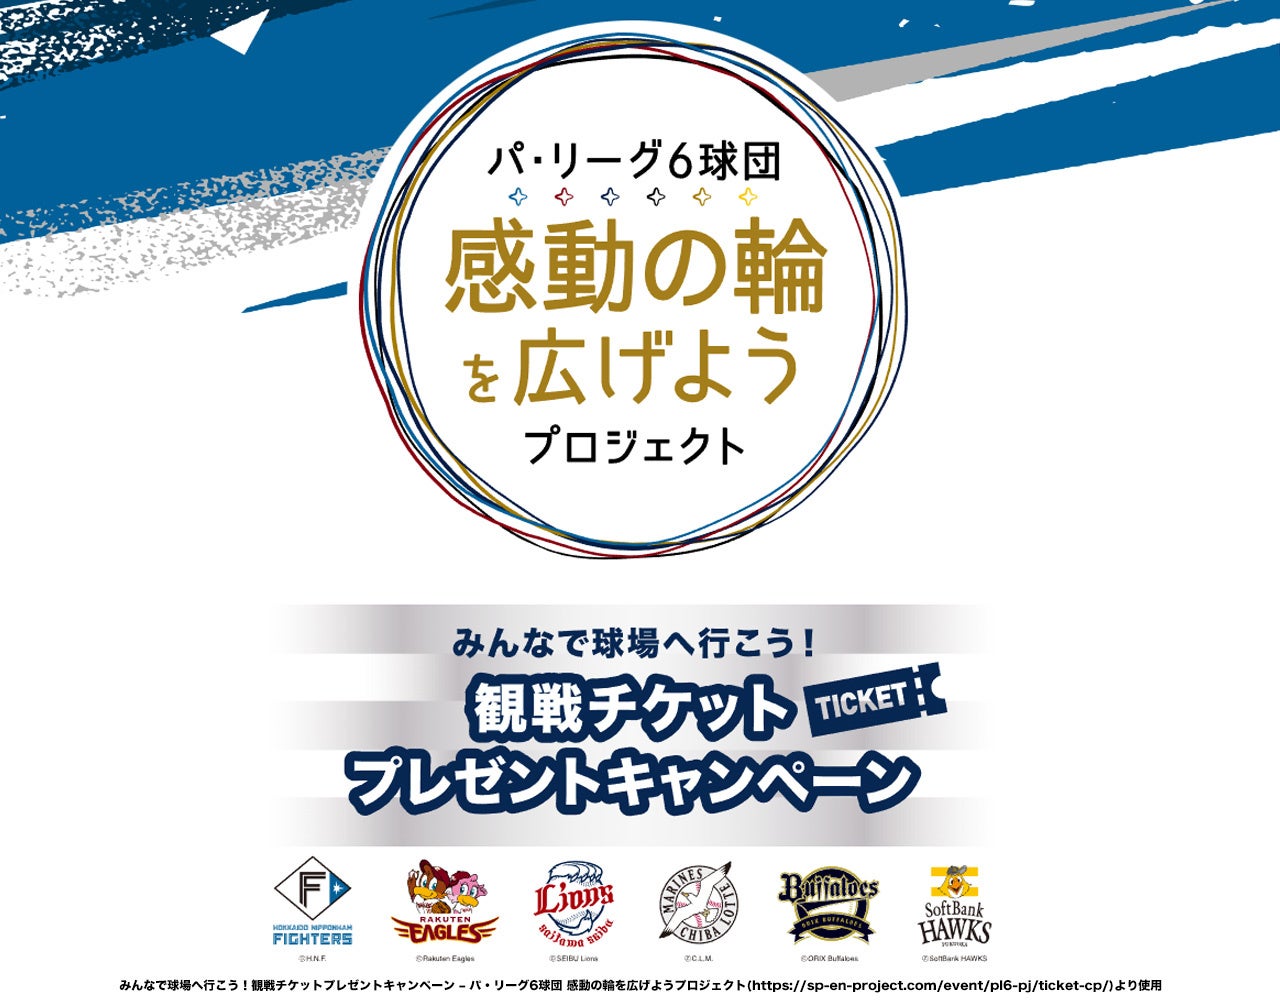 【FC東京】7/17(日)ジュビロ磐田戦『三菱電機Ｄay』開催のお知らせ